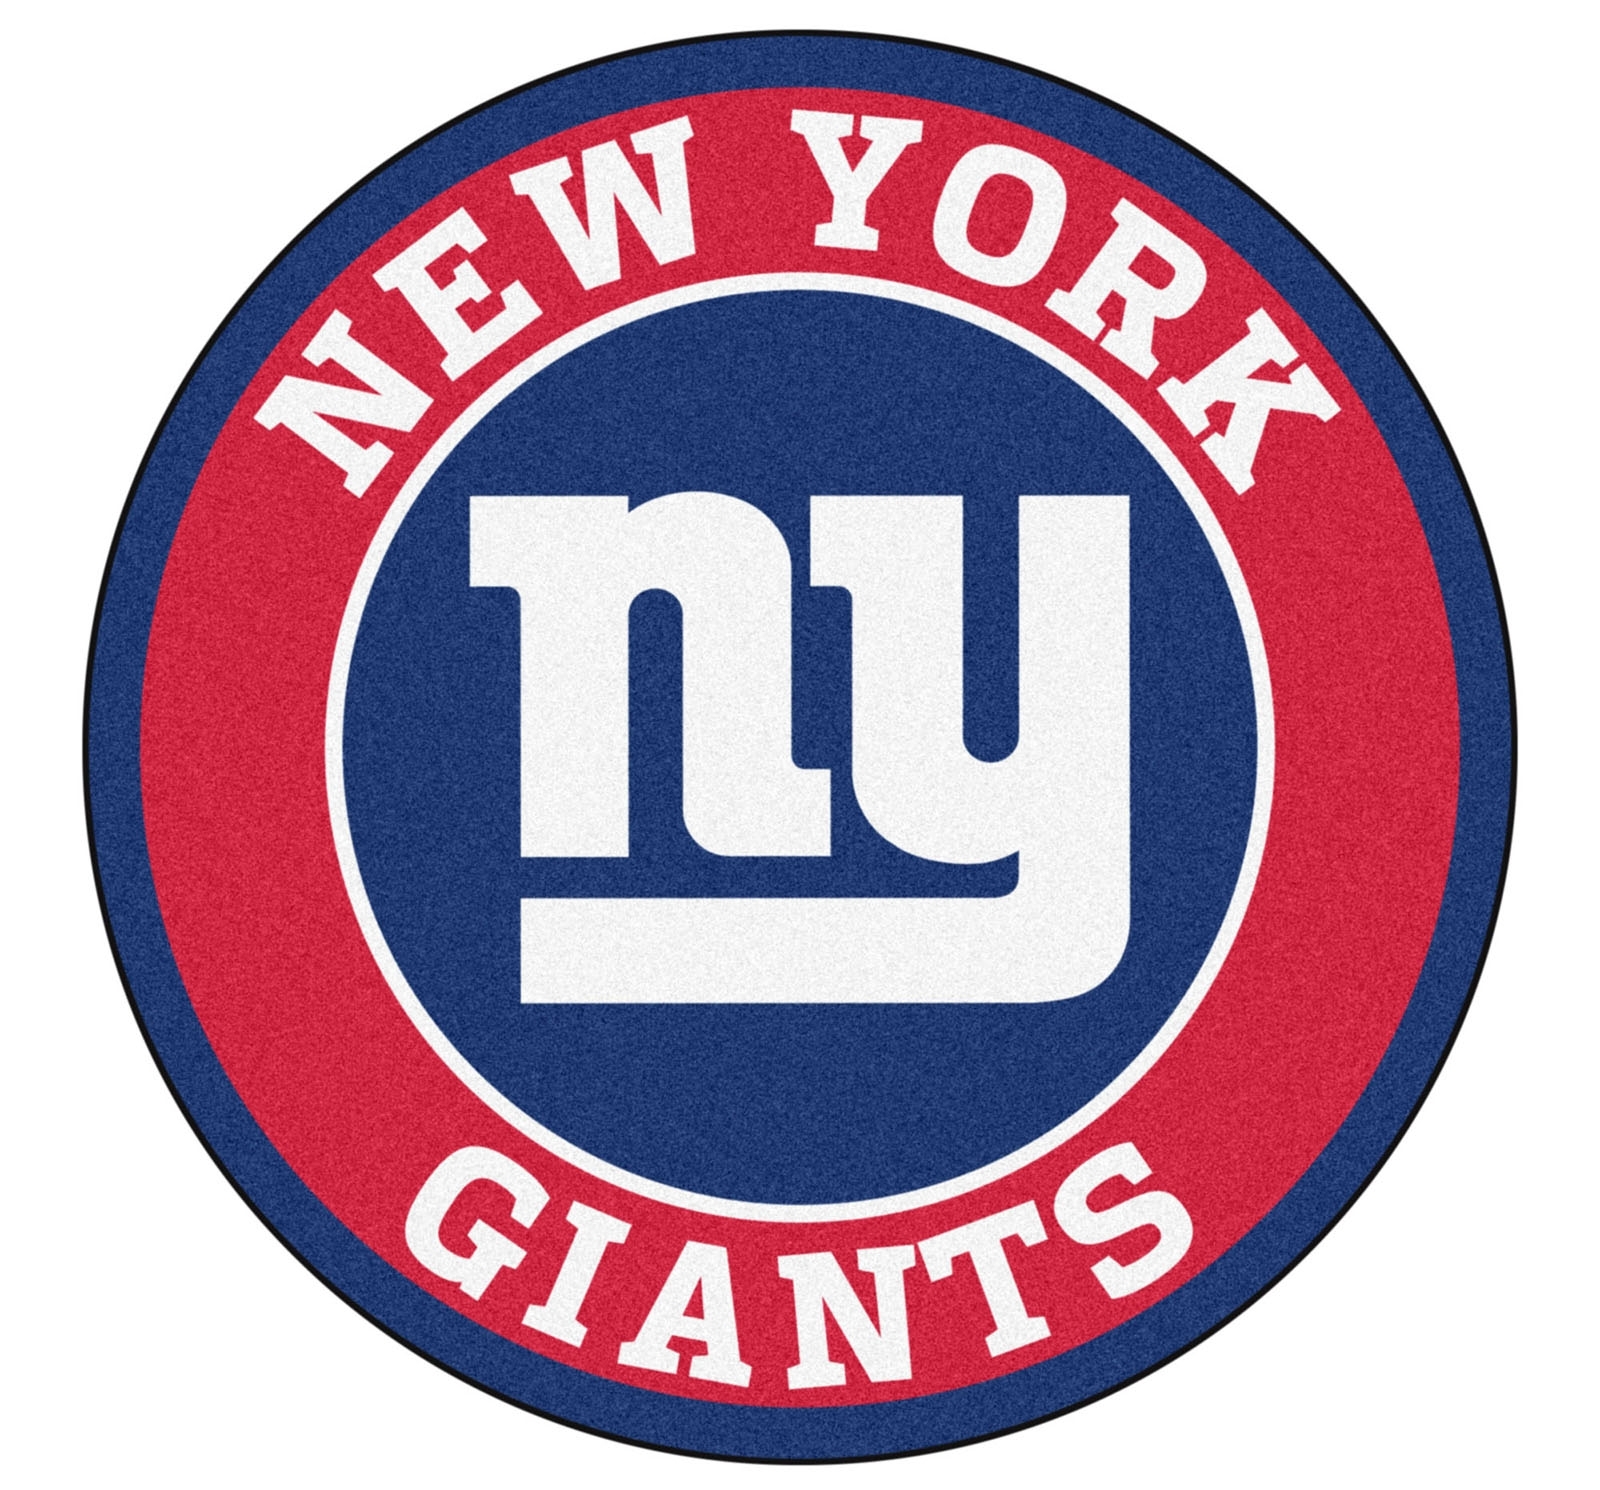 10-best-new-york-giants-logo-pics-full-hd-1920-1080-for-pc-background-2023